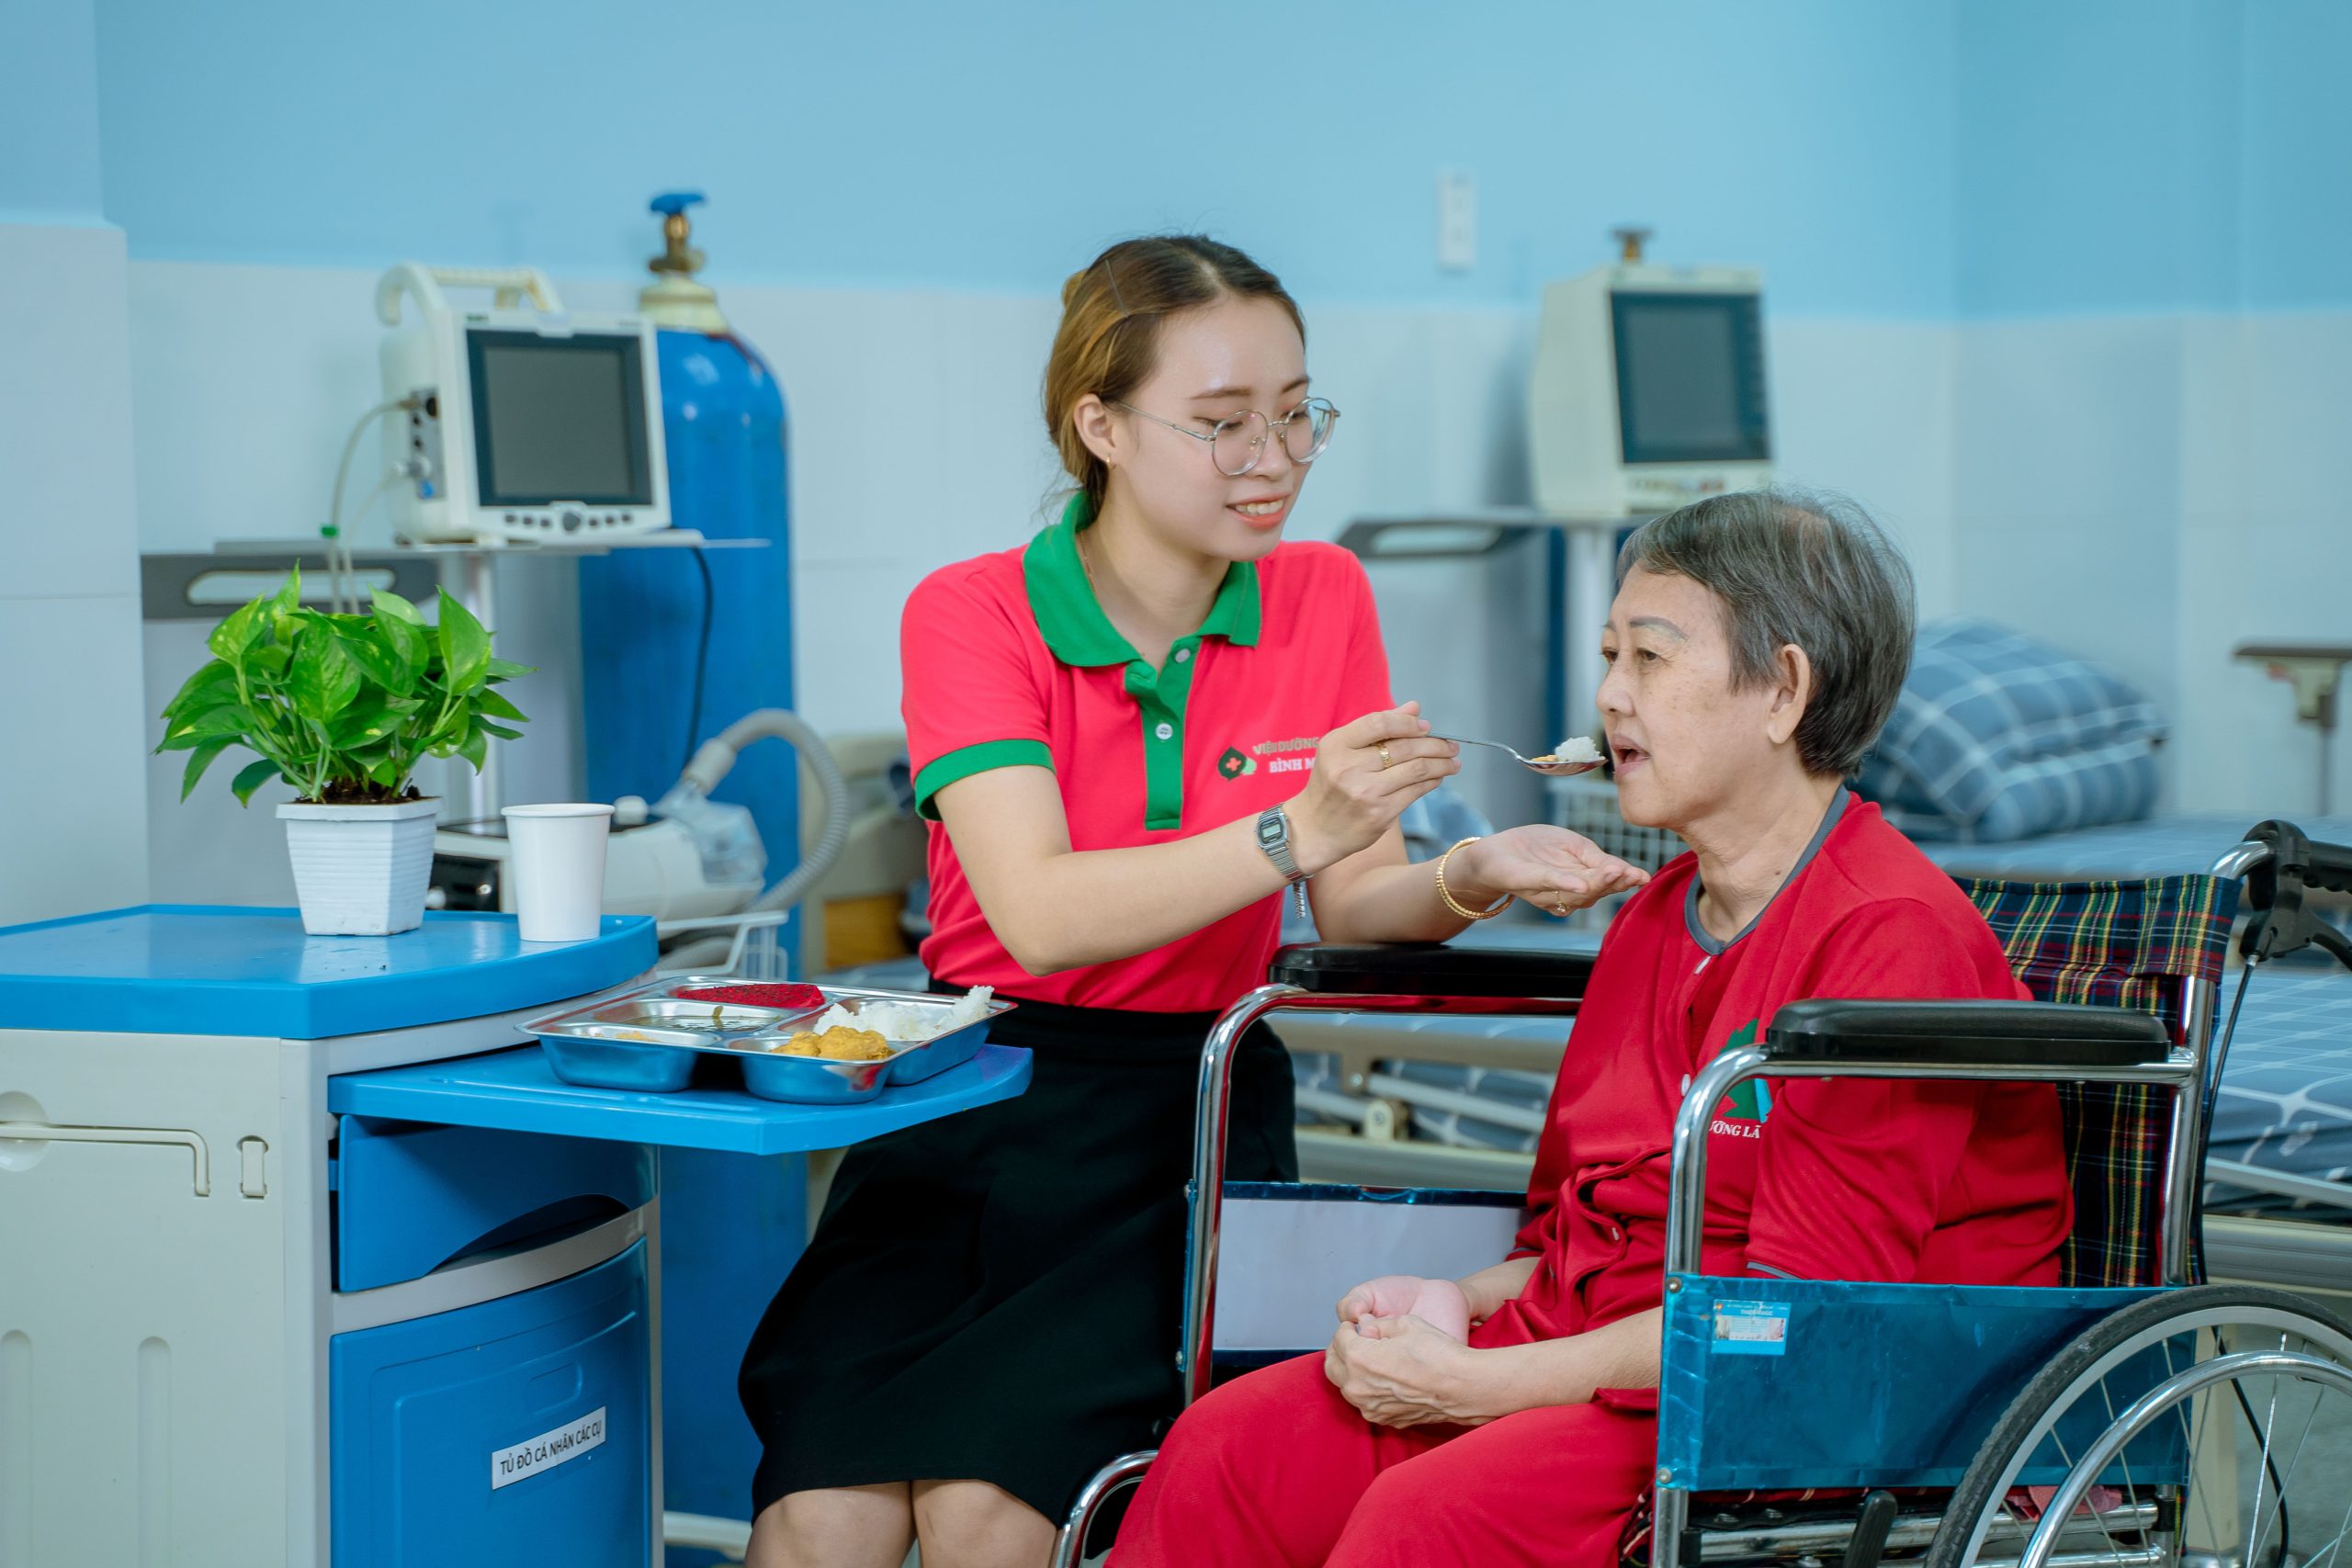 Viện dưỡng lão tiêu chuẩn quốc tế kế hoạch chăm sóc sức khỏe cá nhân hóa cho từng Cụ già